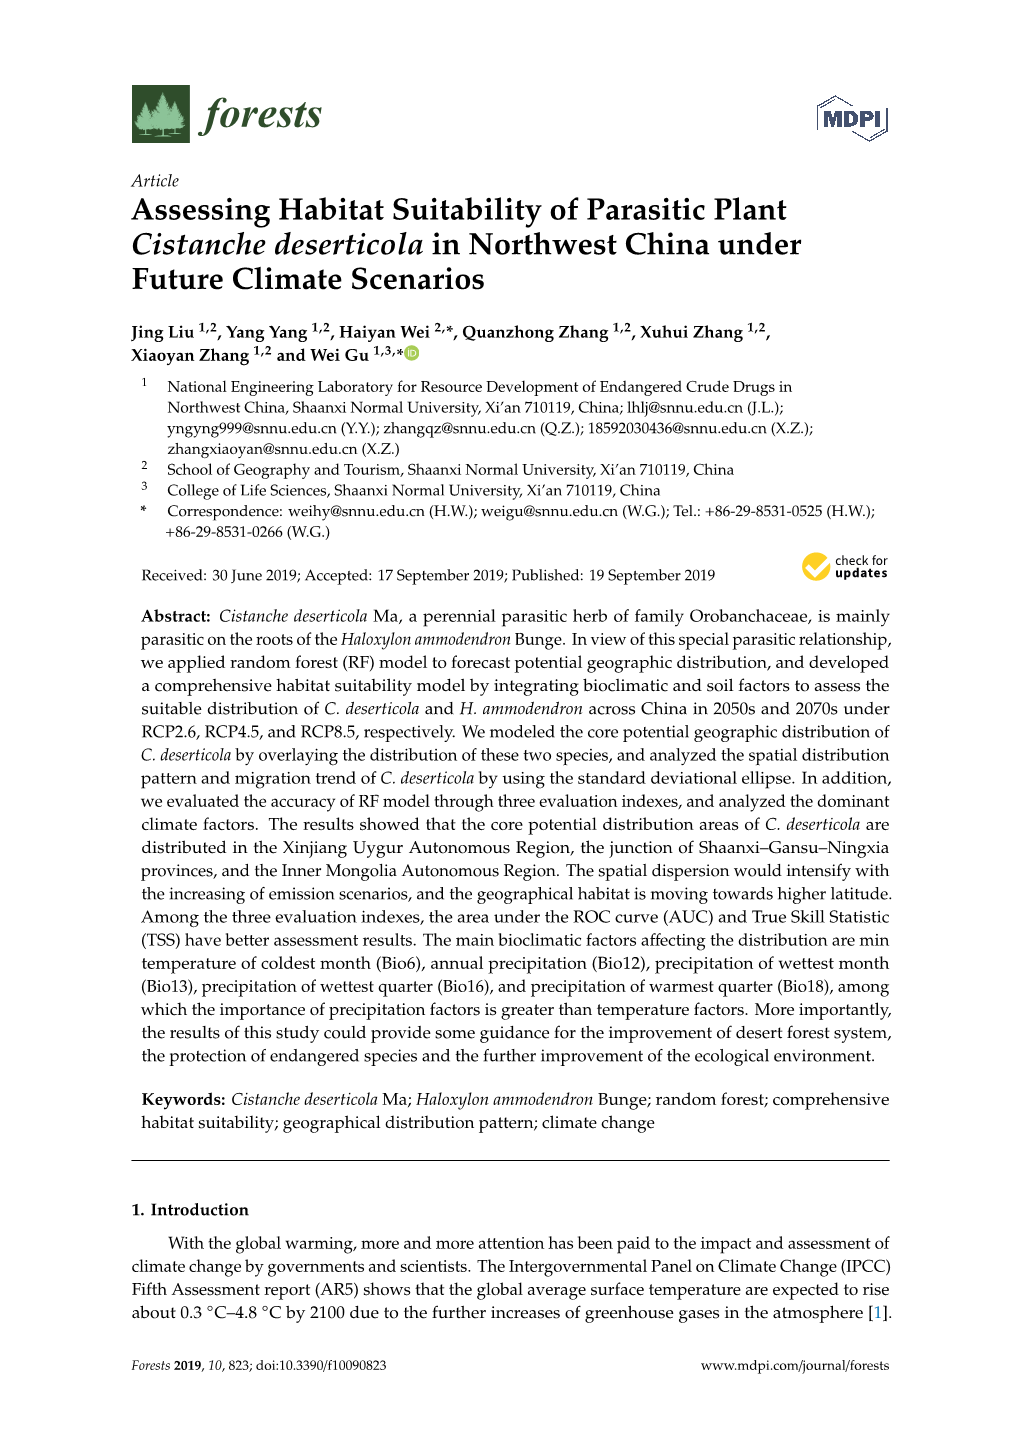 Assessing Habitat Suitability of Parasitic Plant Cistanche Deserticola in Northwest China Under Future Climate Scenarios